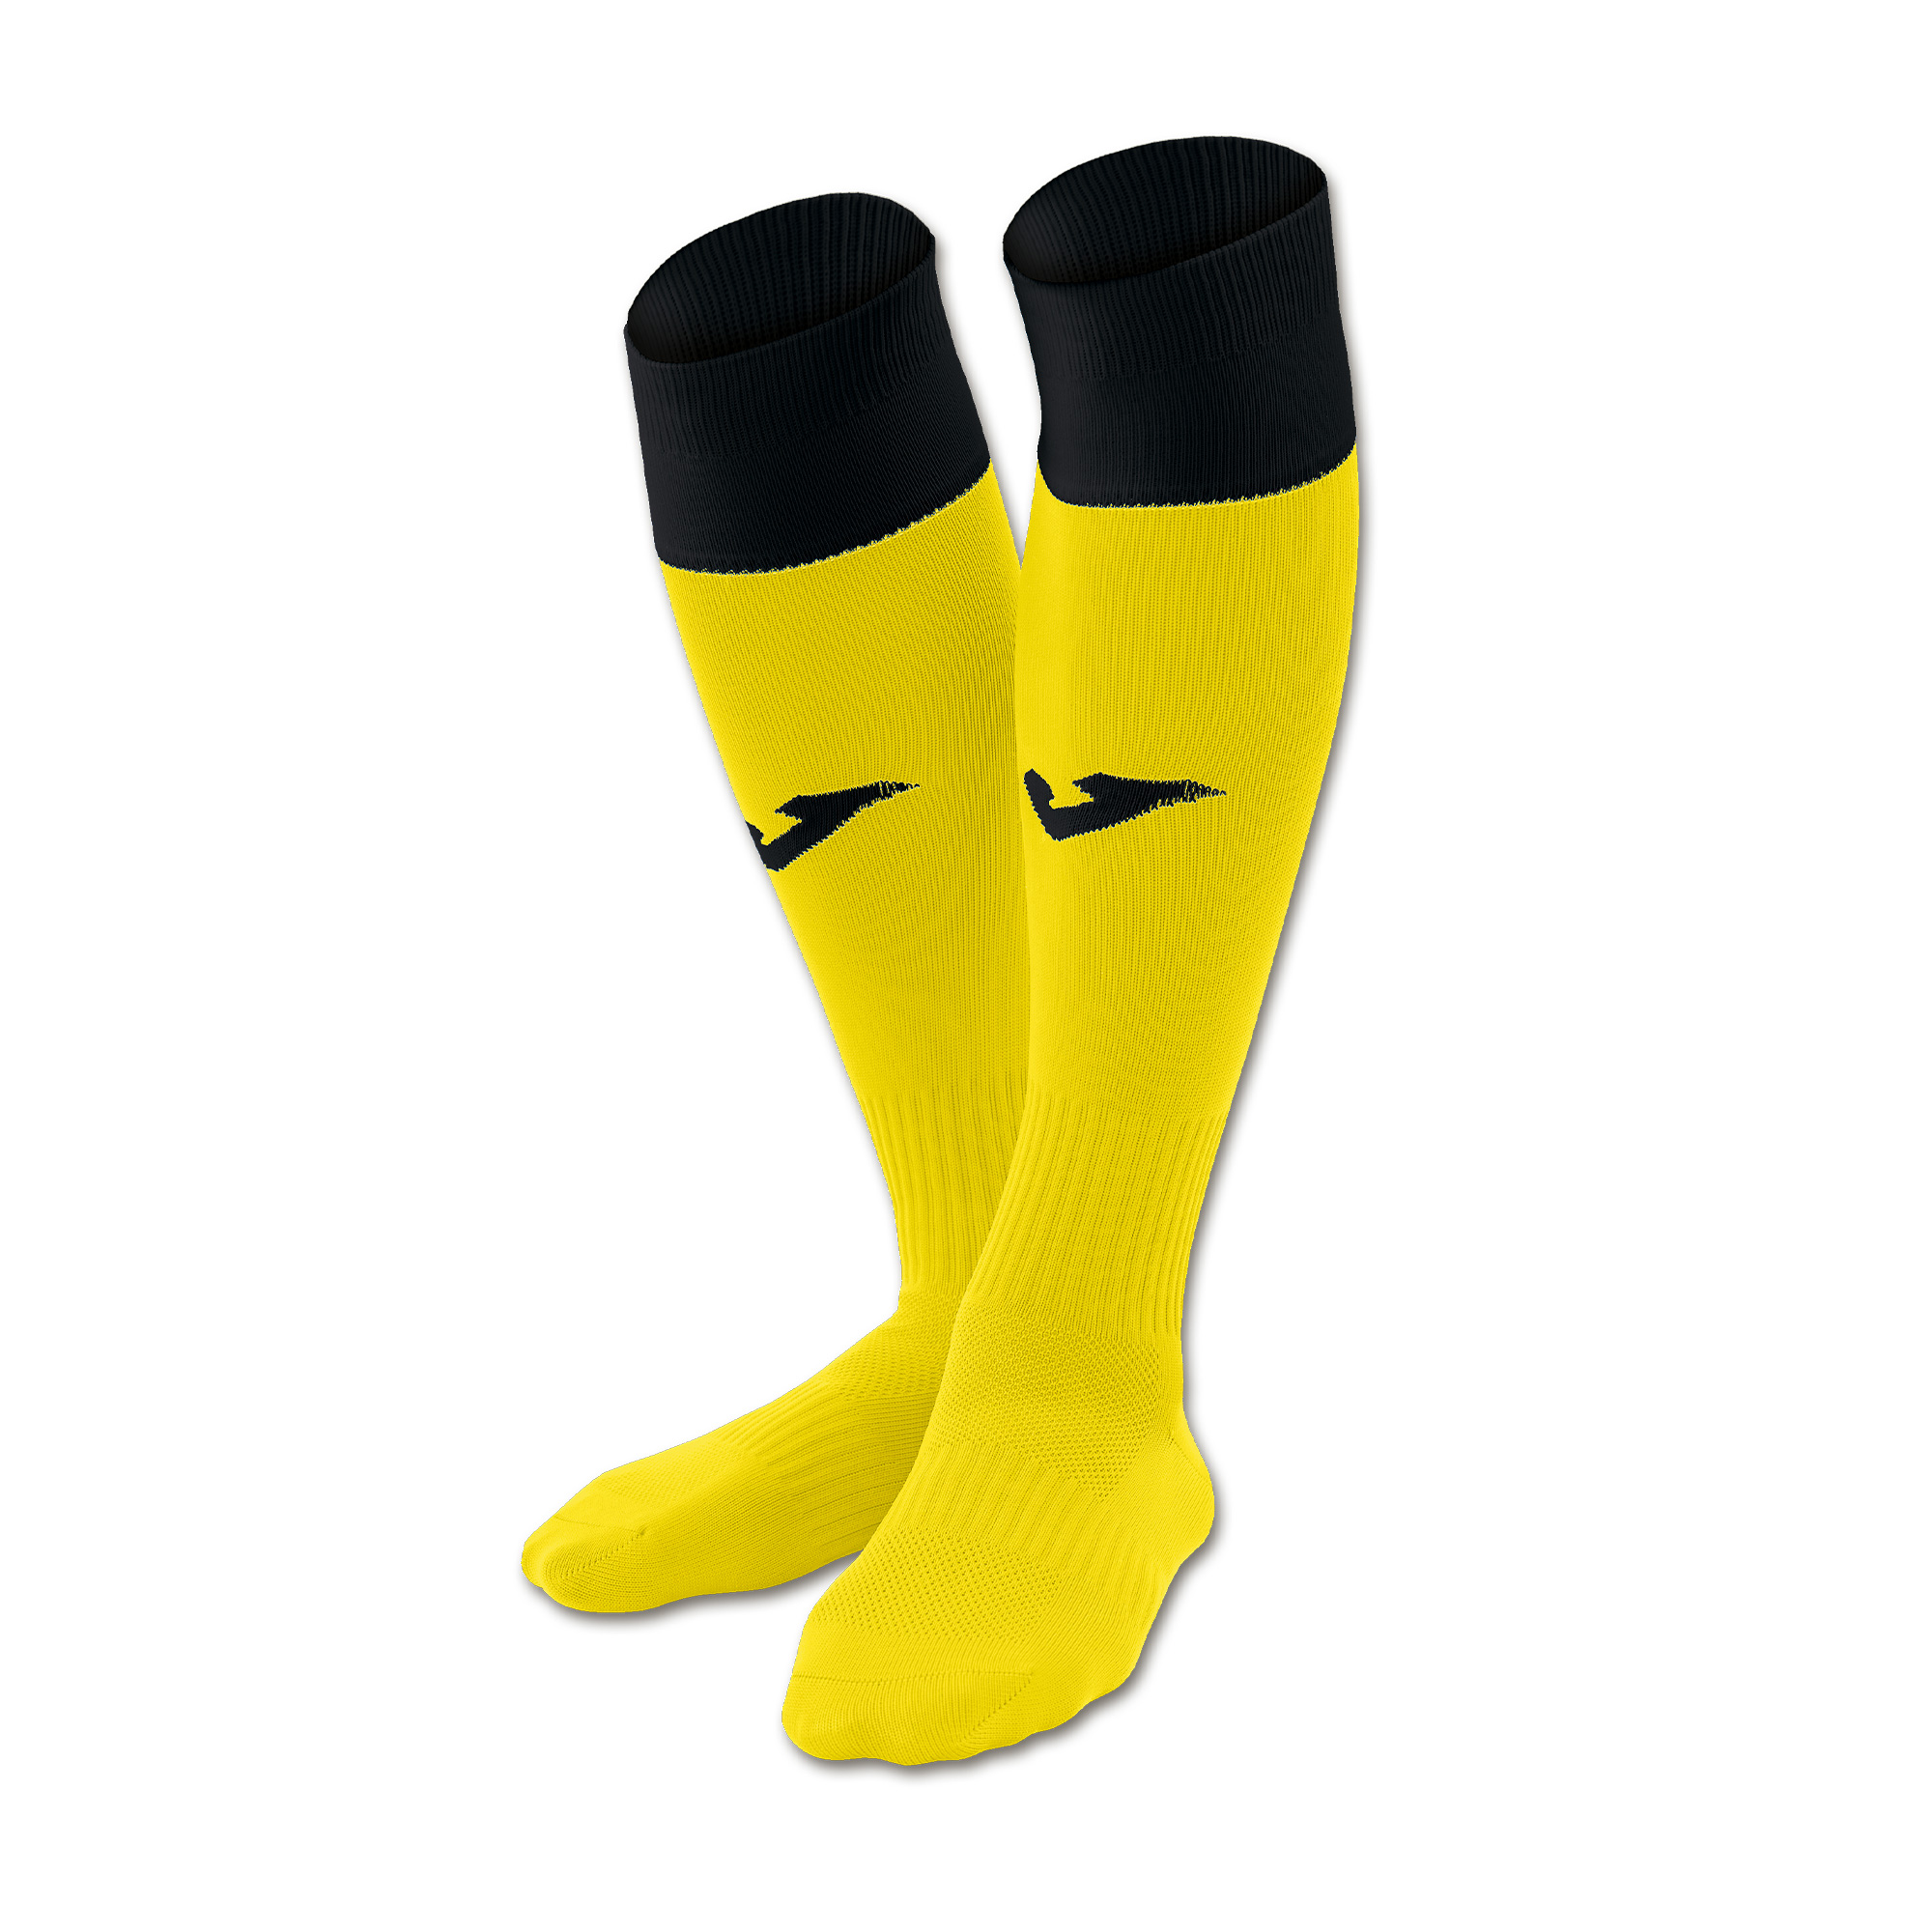 Calcio 24 Socks